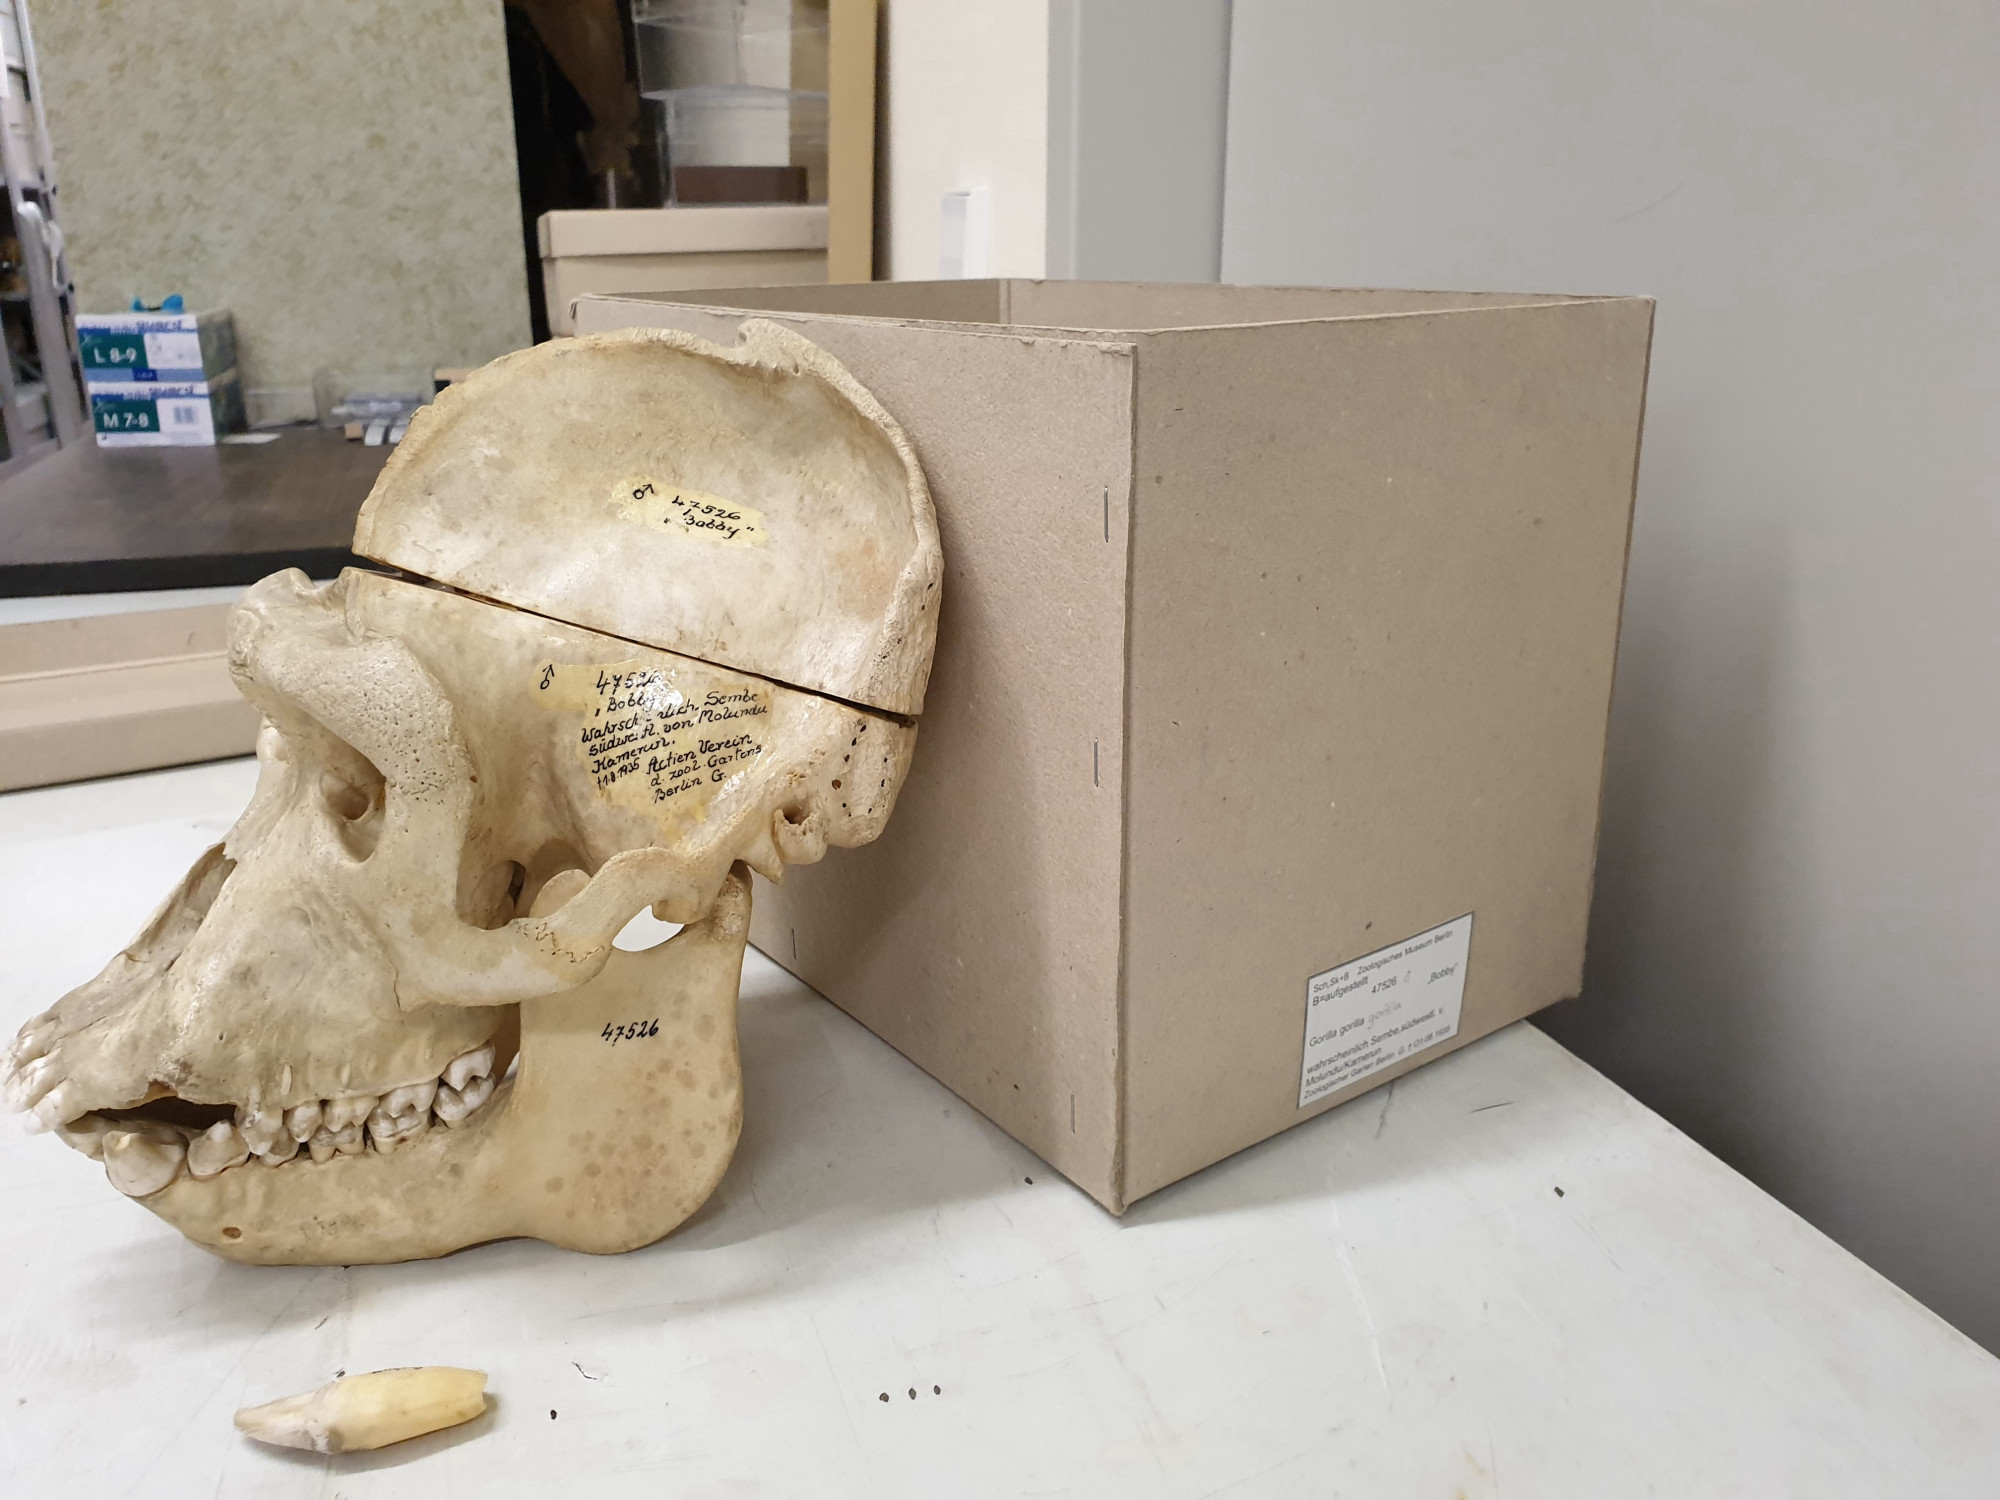 Fotografie des Schädels des Gorillas "Bobby" im Profil, wie er auf einem Tisch an eine Kiste angelehnt steht. Der Knochen ist oberhalb der Augen horizontal durchsägt.